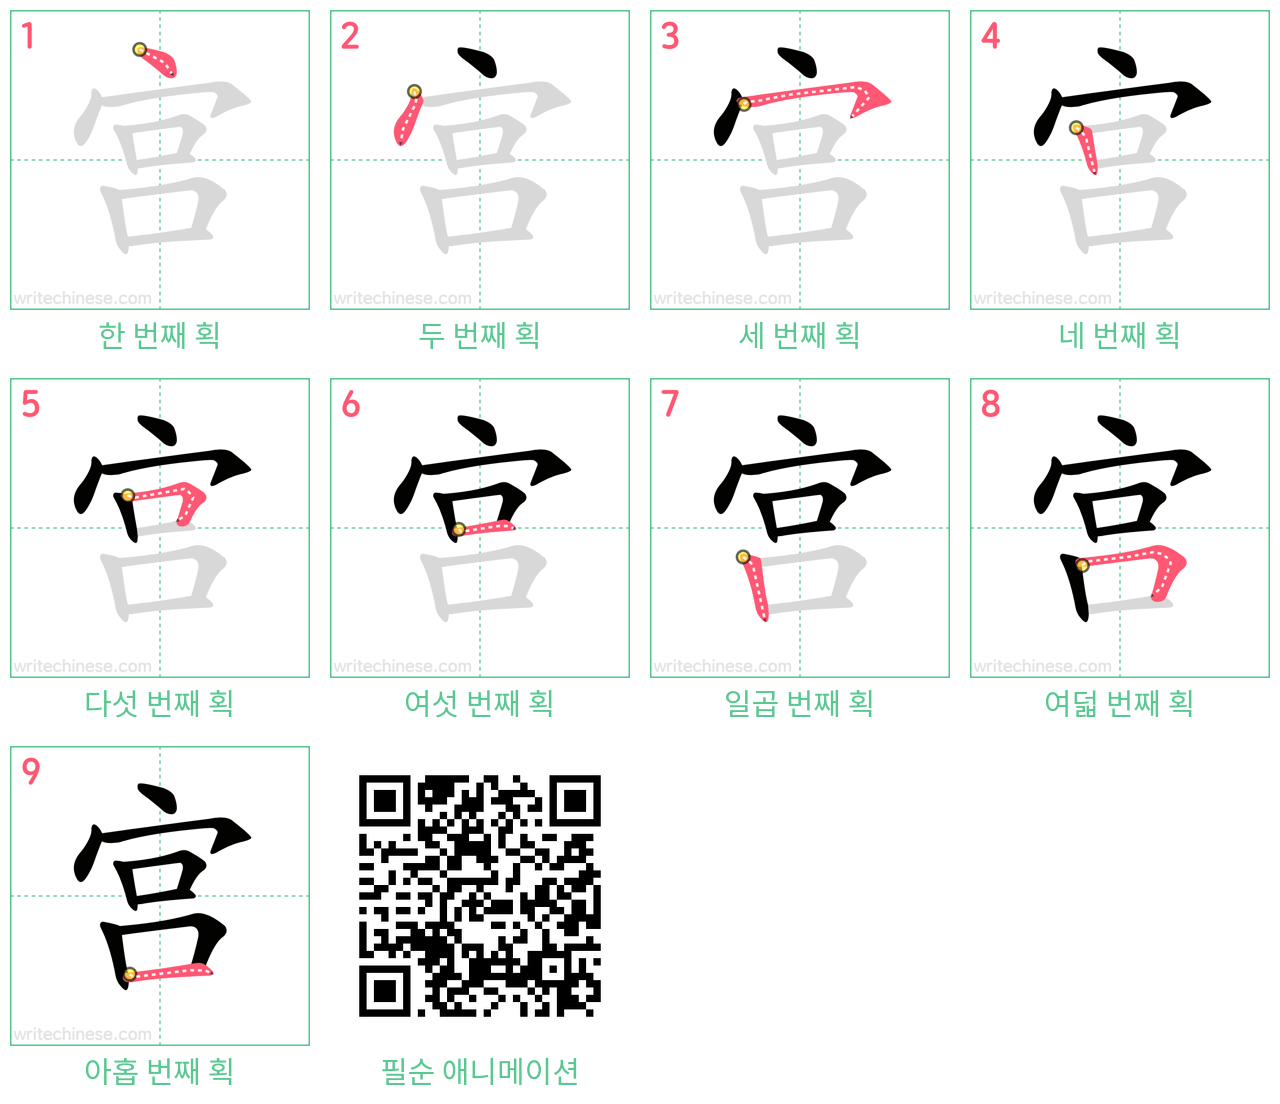 宫 step-by-step stroke order diagrams